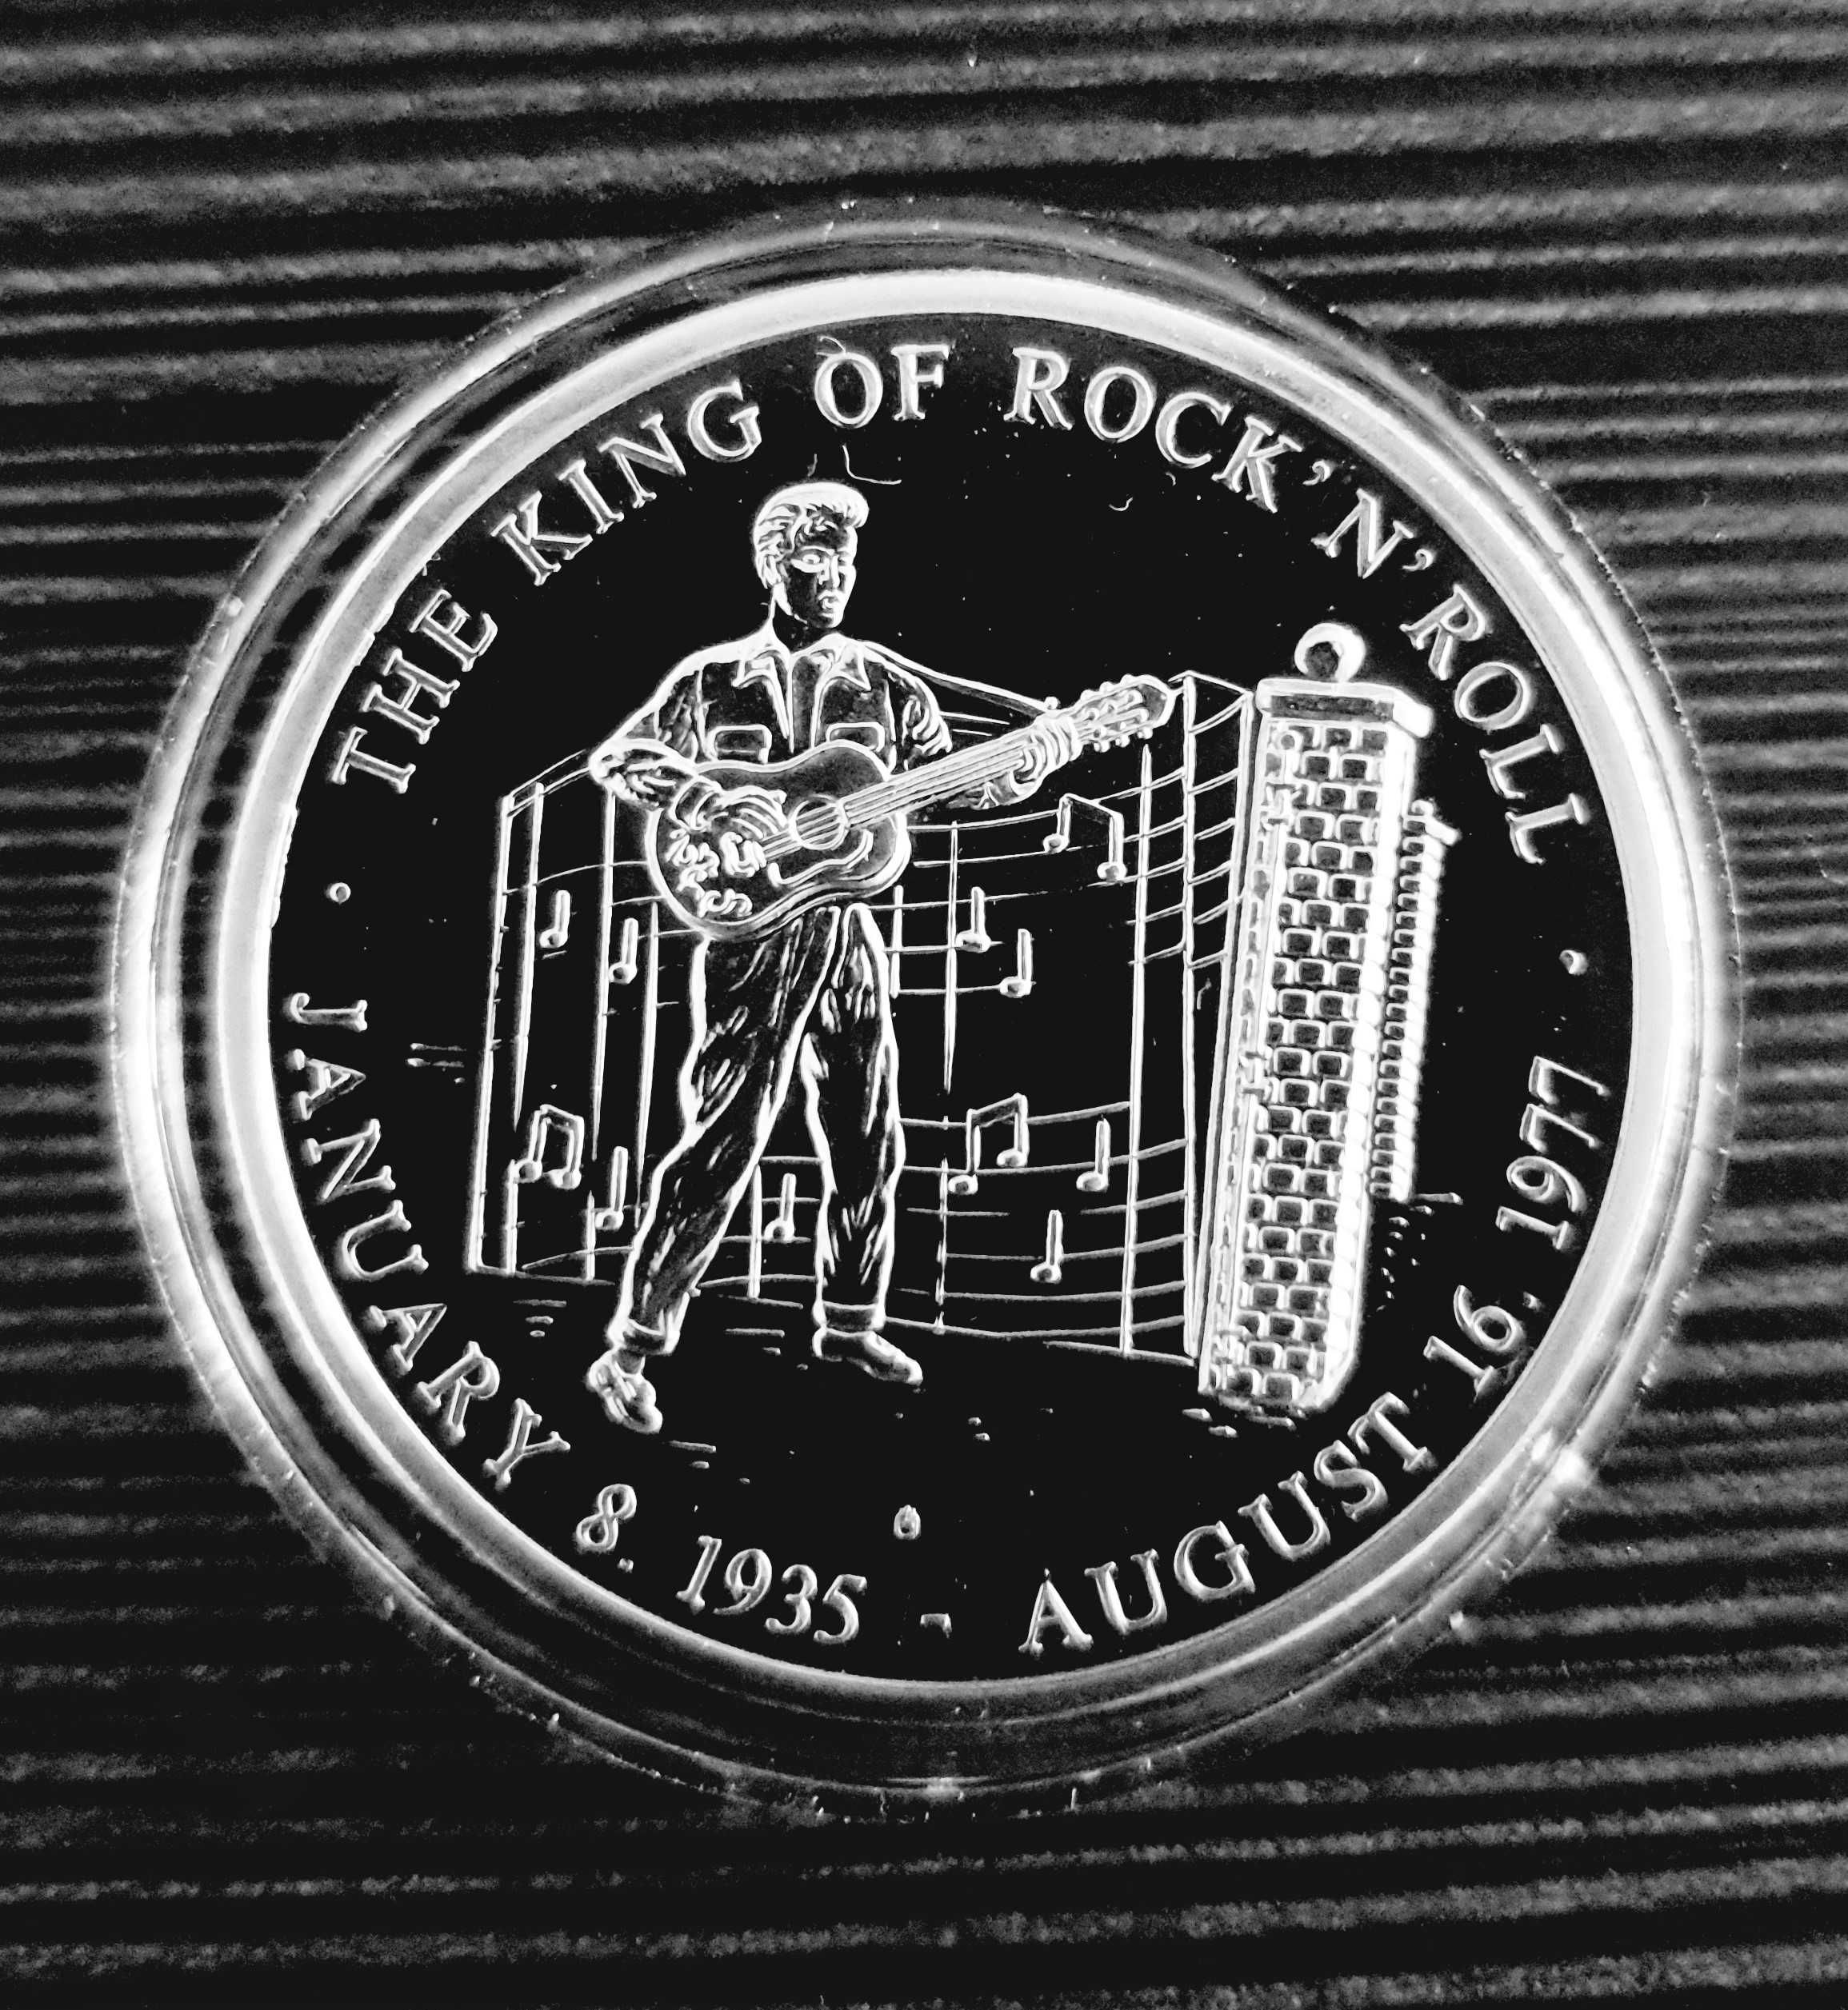 Elvis Presley moneta medal "The King of Rock'n'Roll"